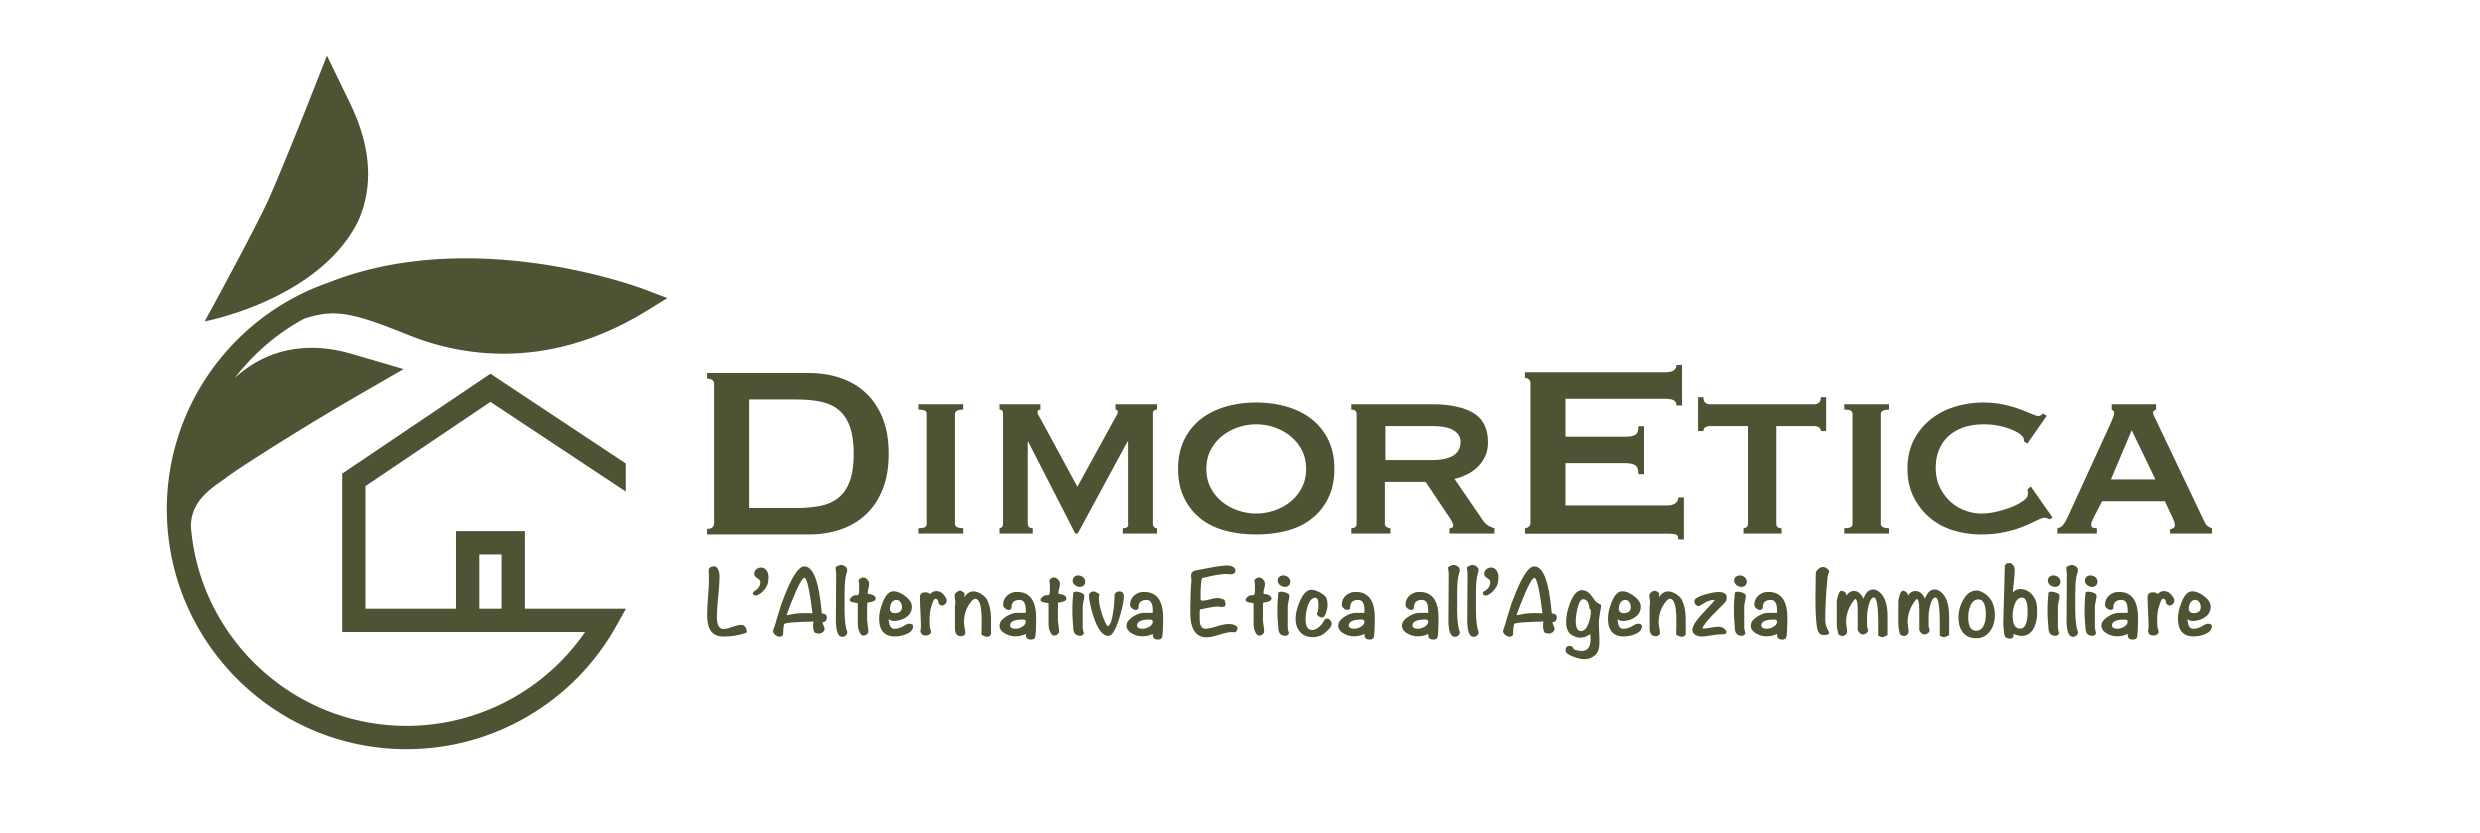 DimorEtica- L'alternativa etica all'agenzia immobiliare